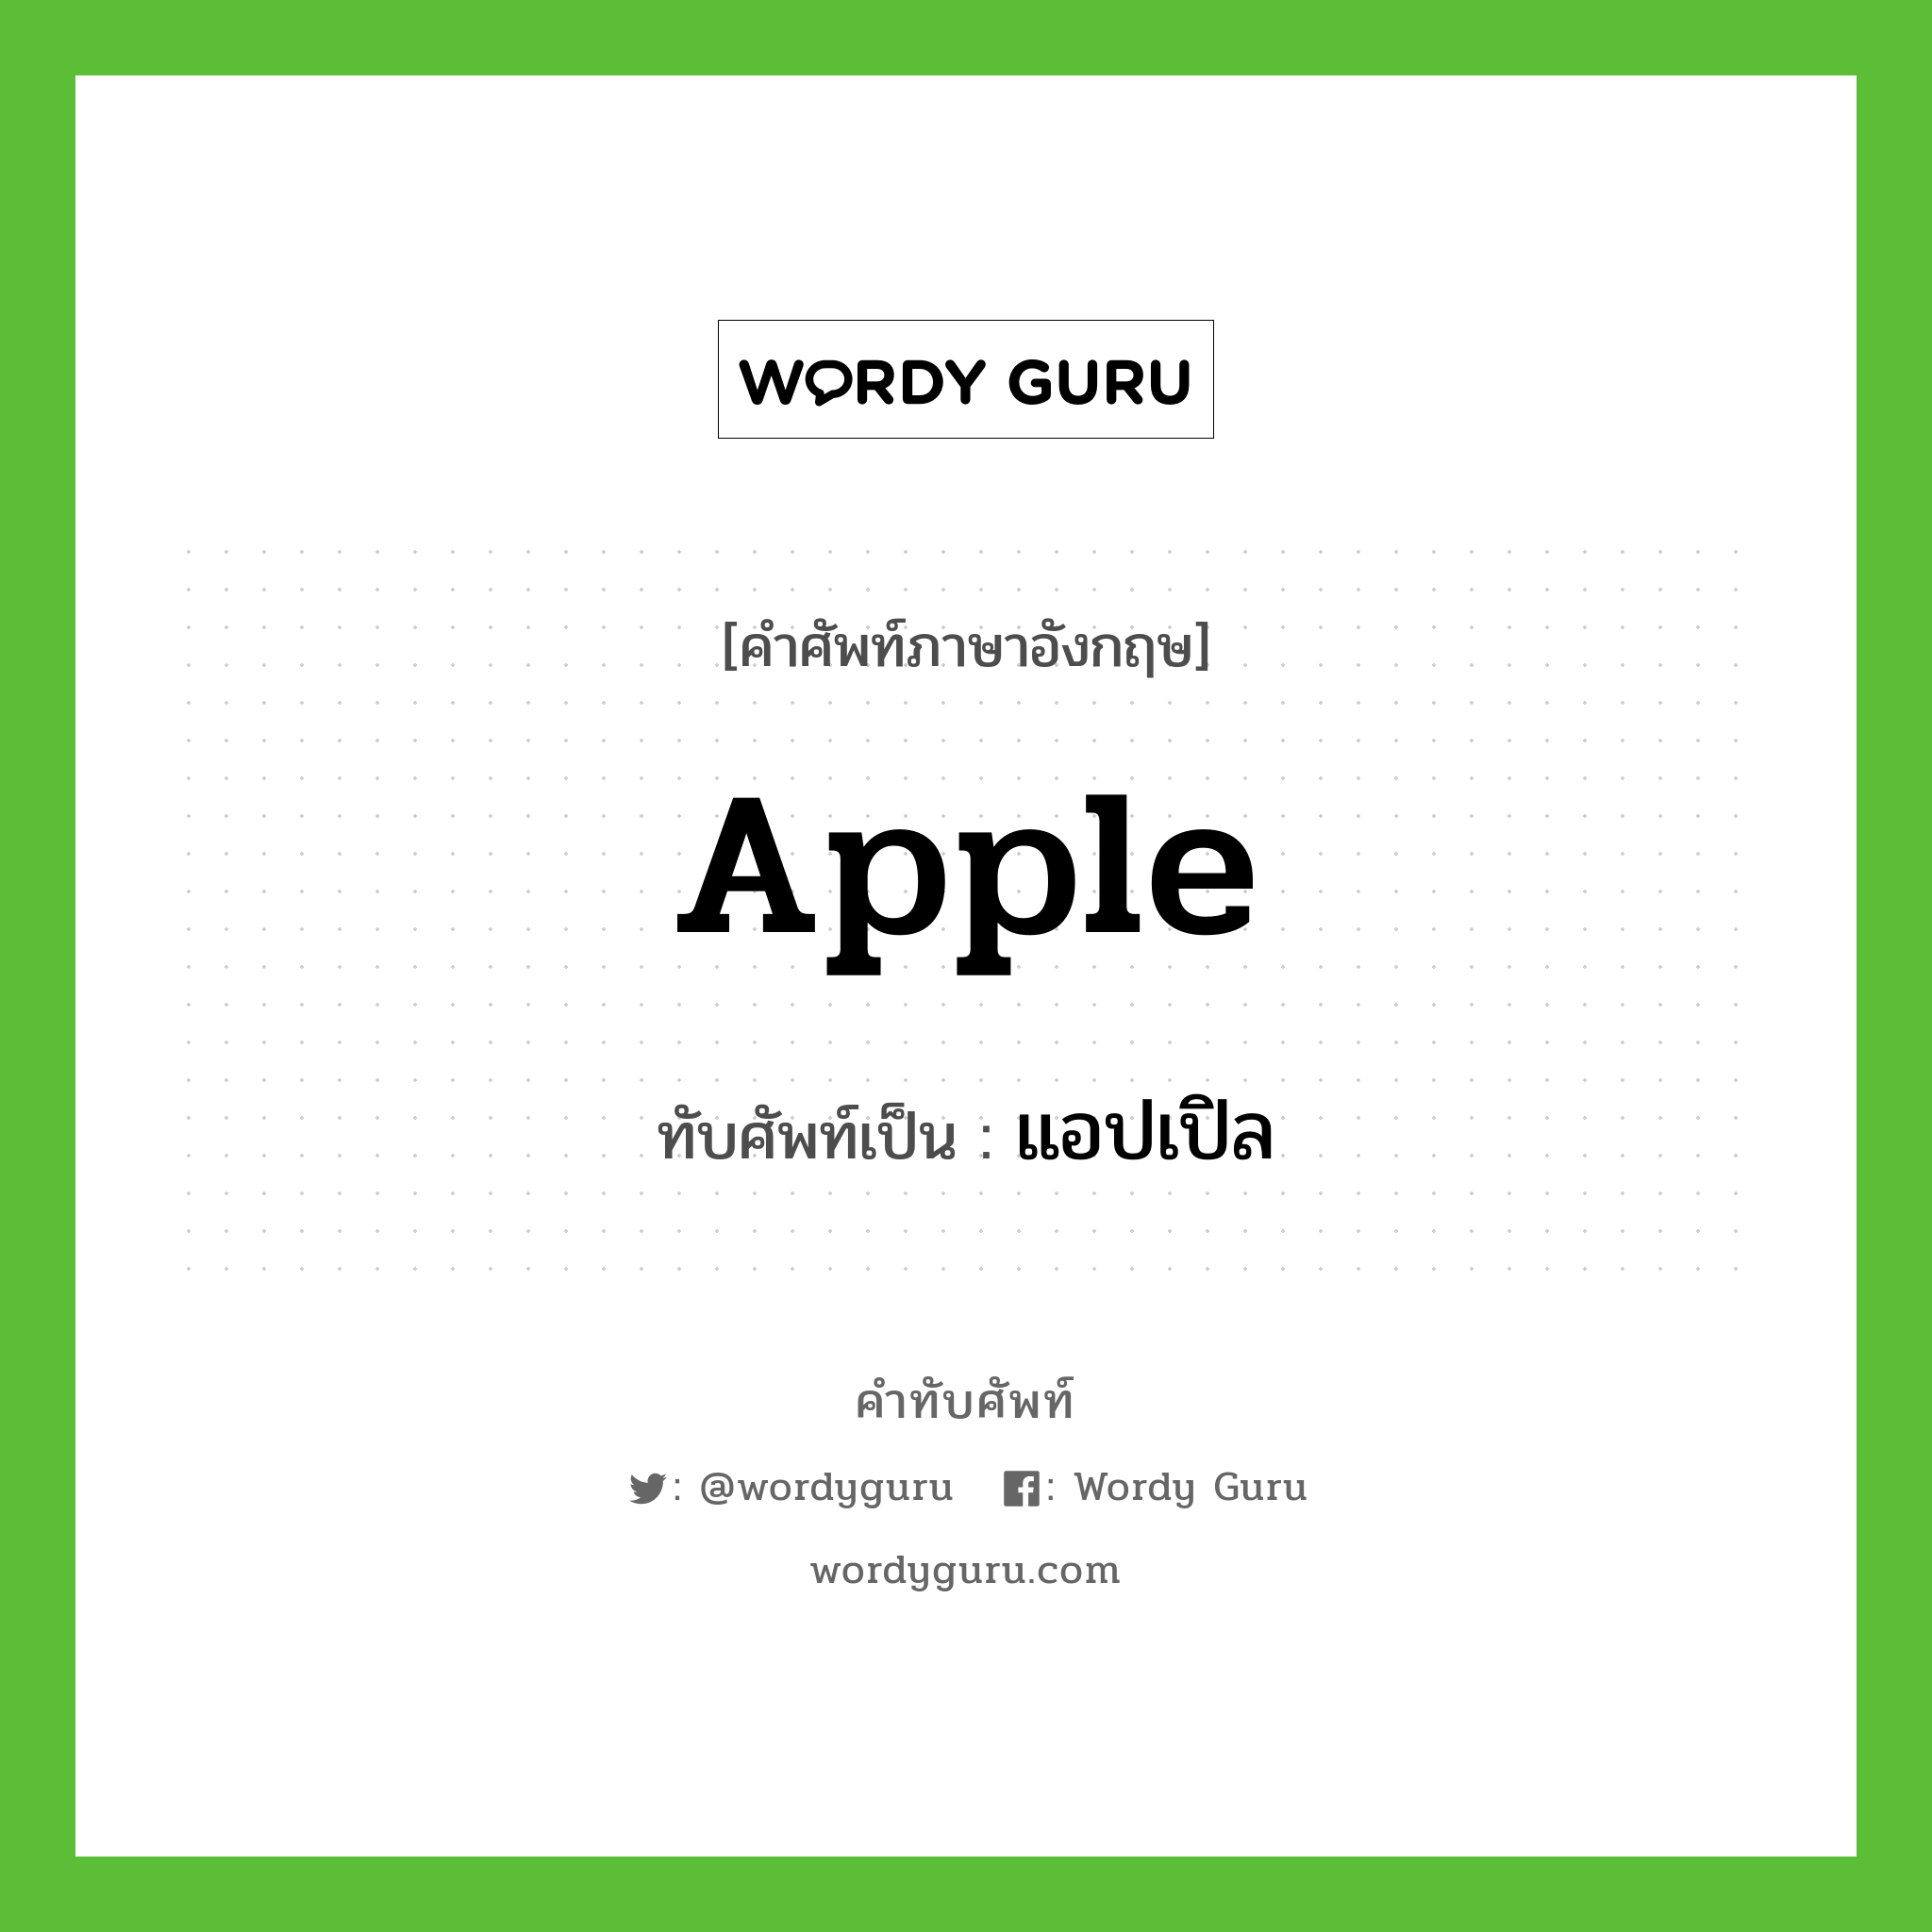 apple เขียนเป็นคำไทยว่าอะไร?, คำศัพท์ภาษาอังกฤษ apple ทับศัพท์เป็น แอปเปิล